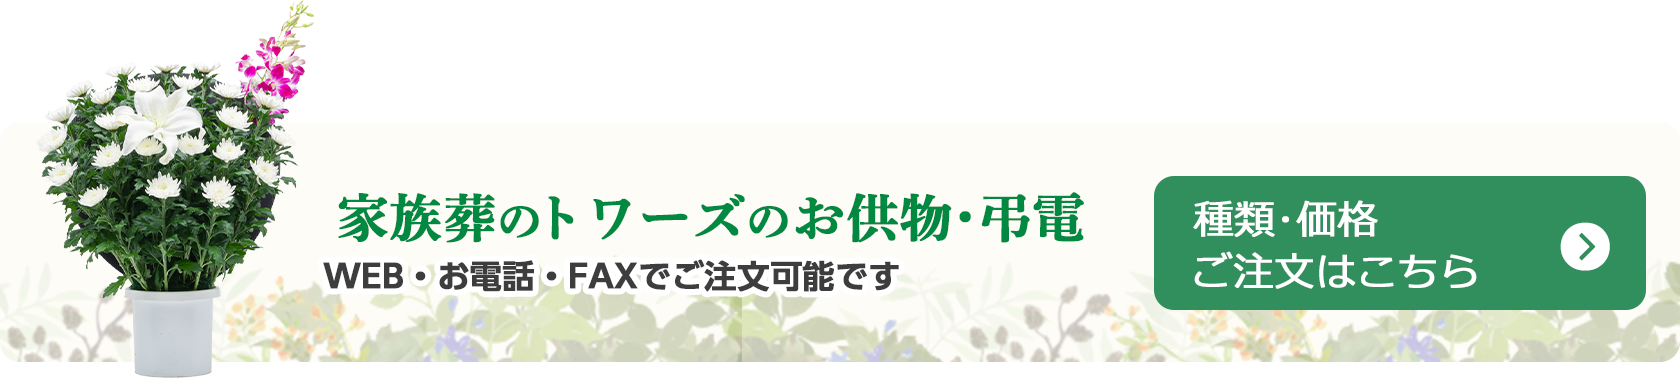 愛知・静岡で葬儀・葬式・家族葬をお探しならトワーズ  共花 WEB・お電話・FAXで注文可能です